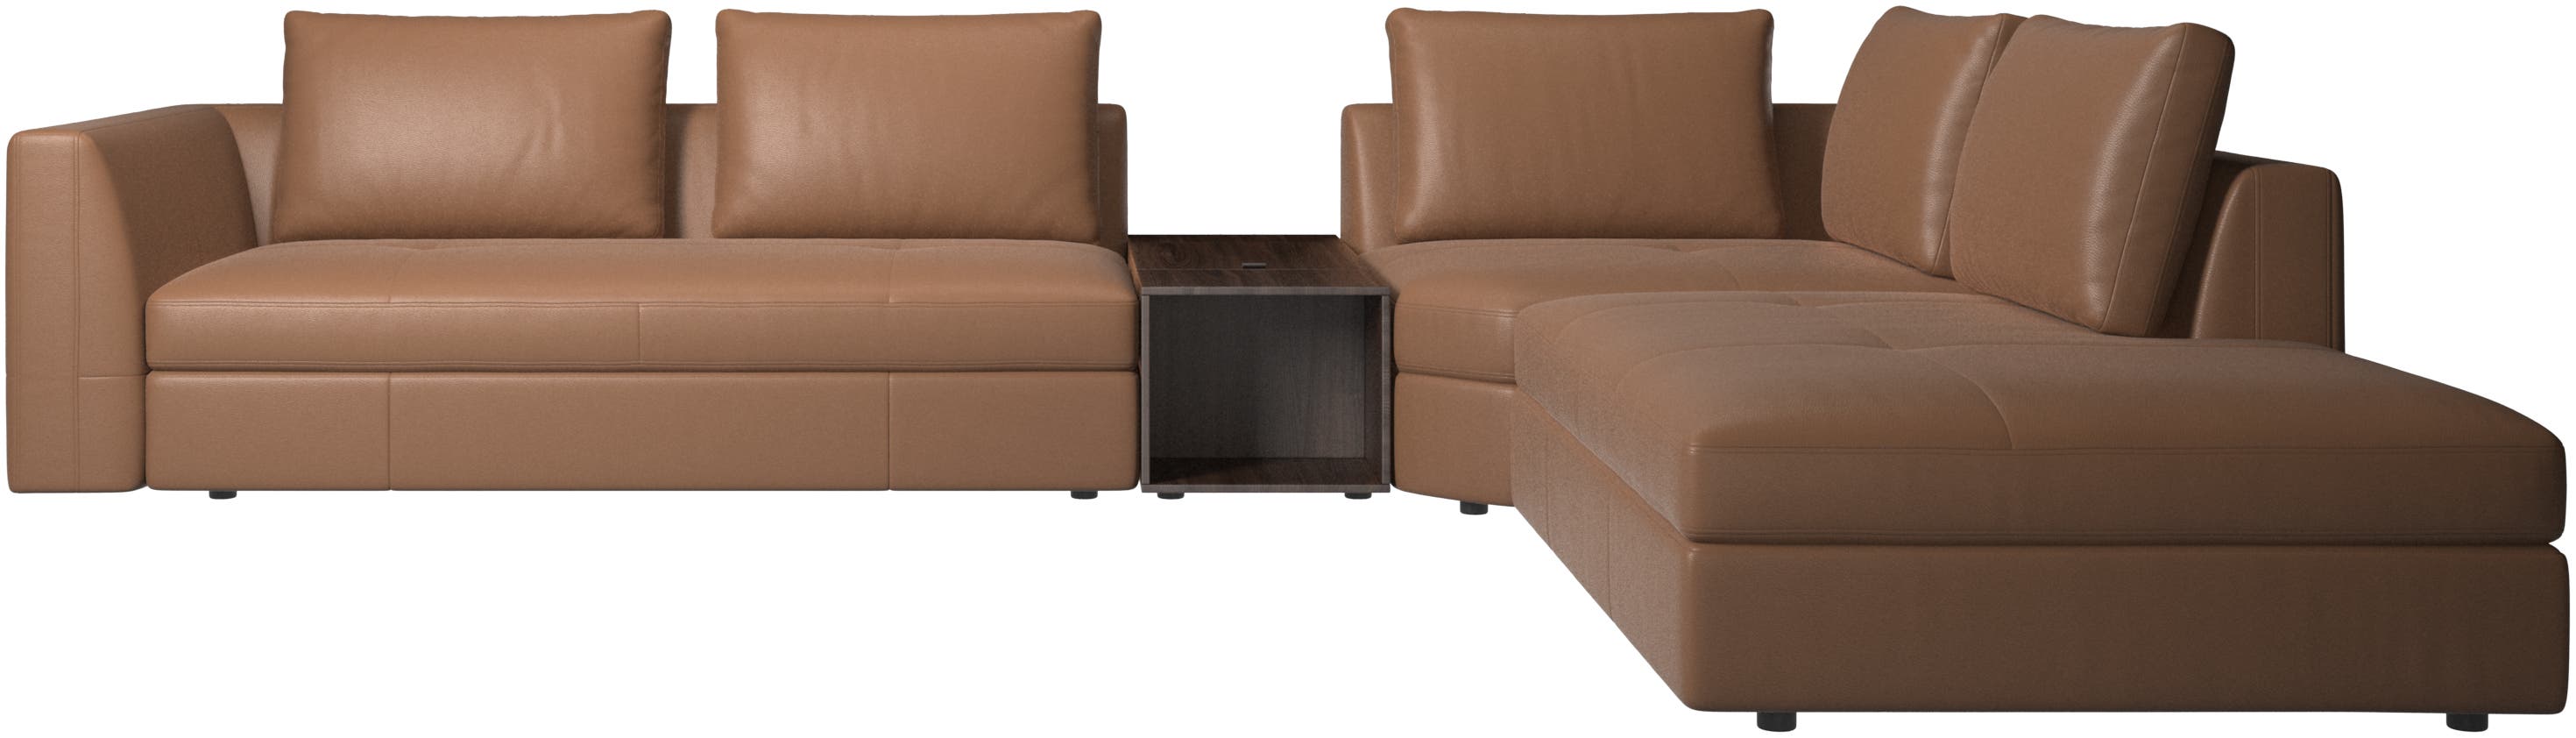 Bergamo转角沙发，带弧形单元及储物功能脚蹬